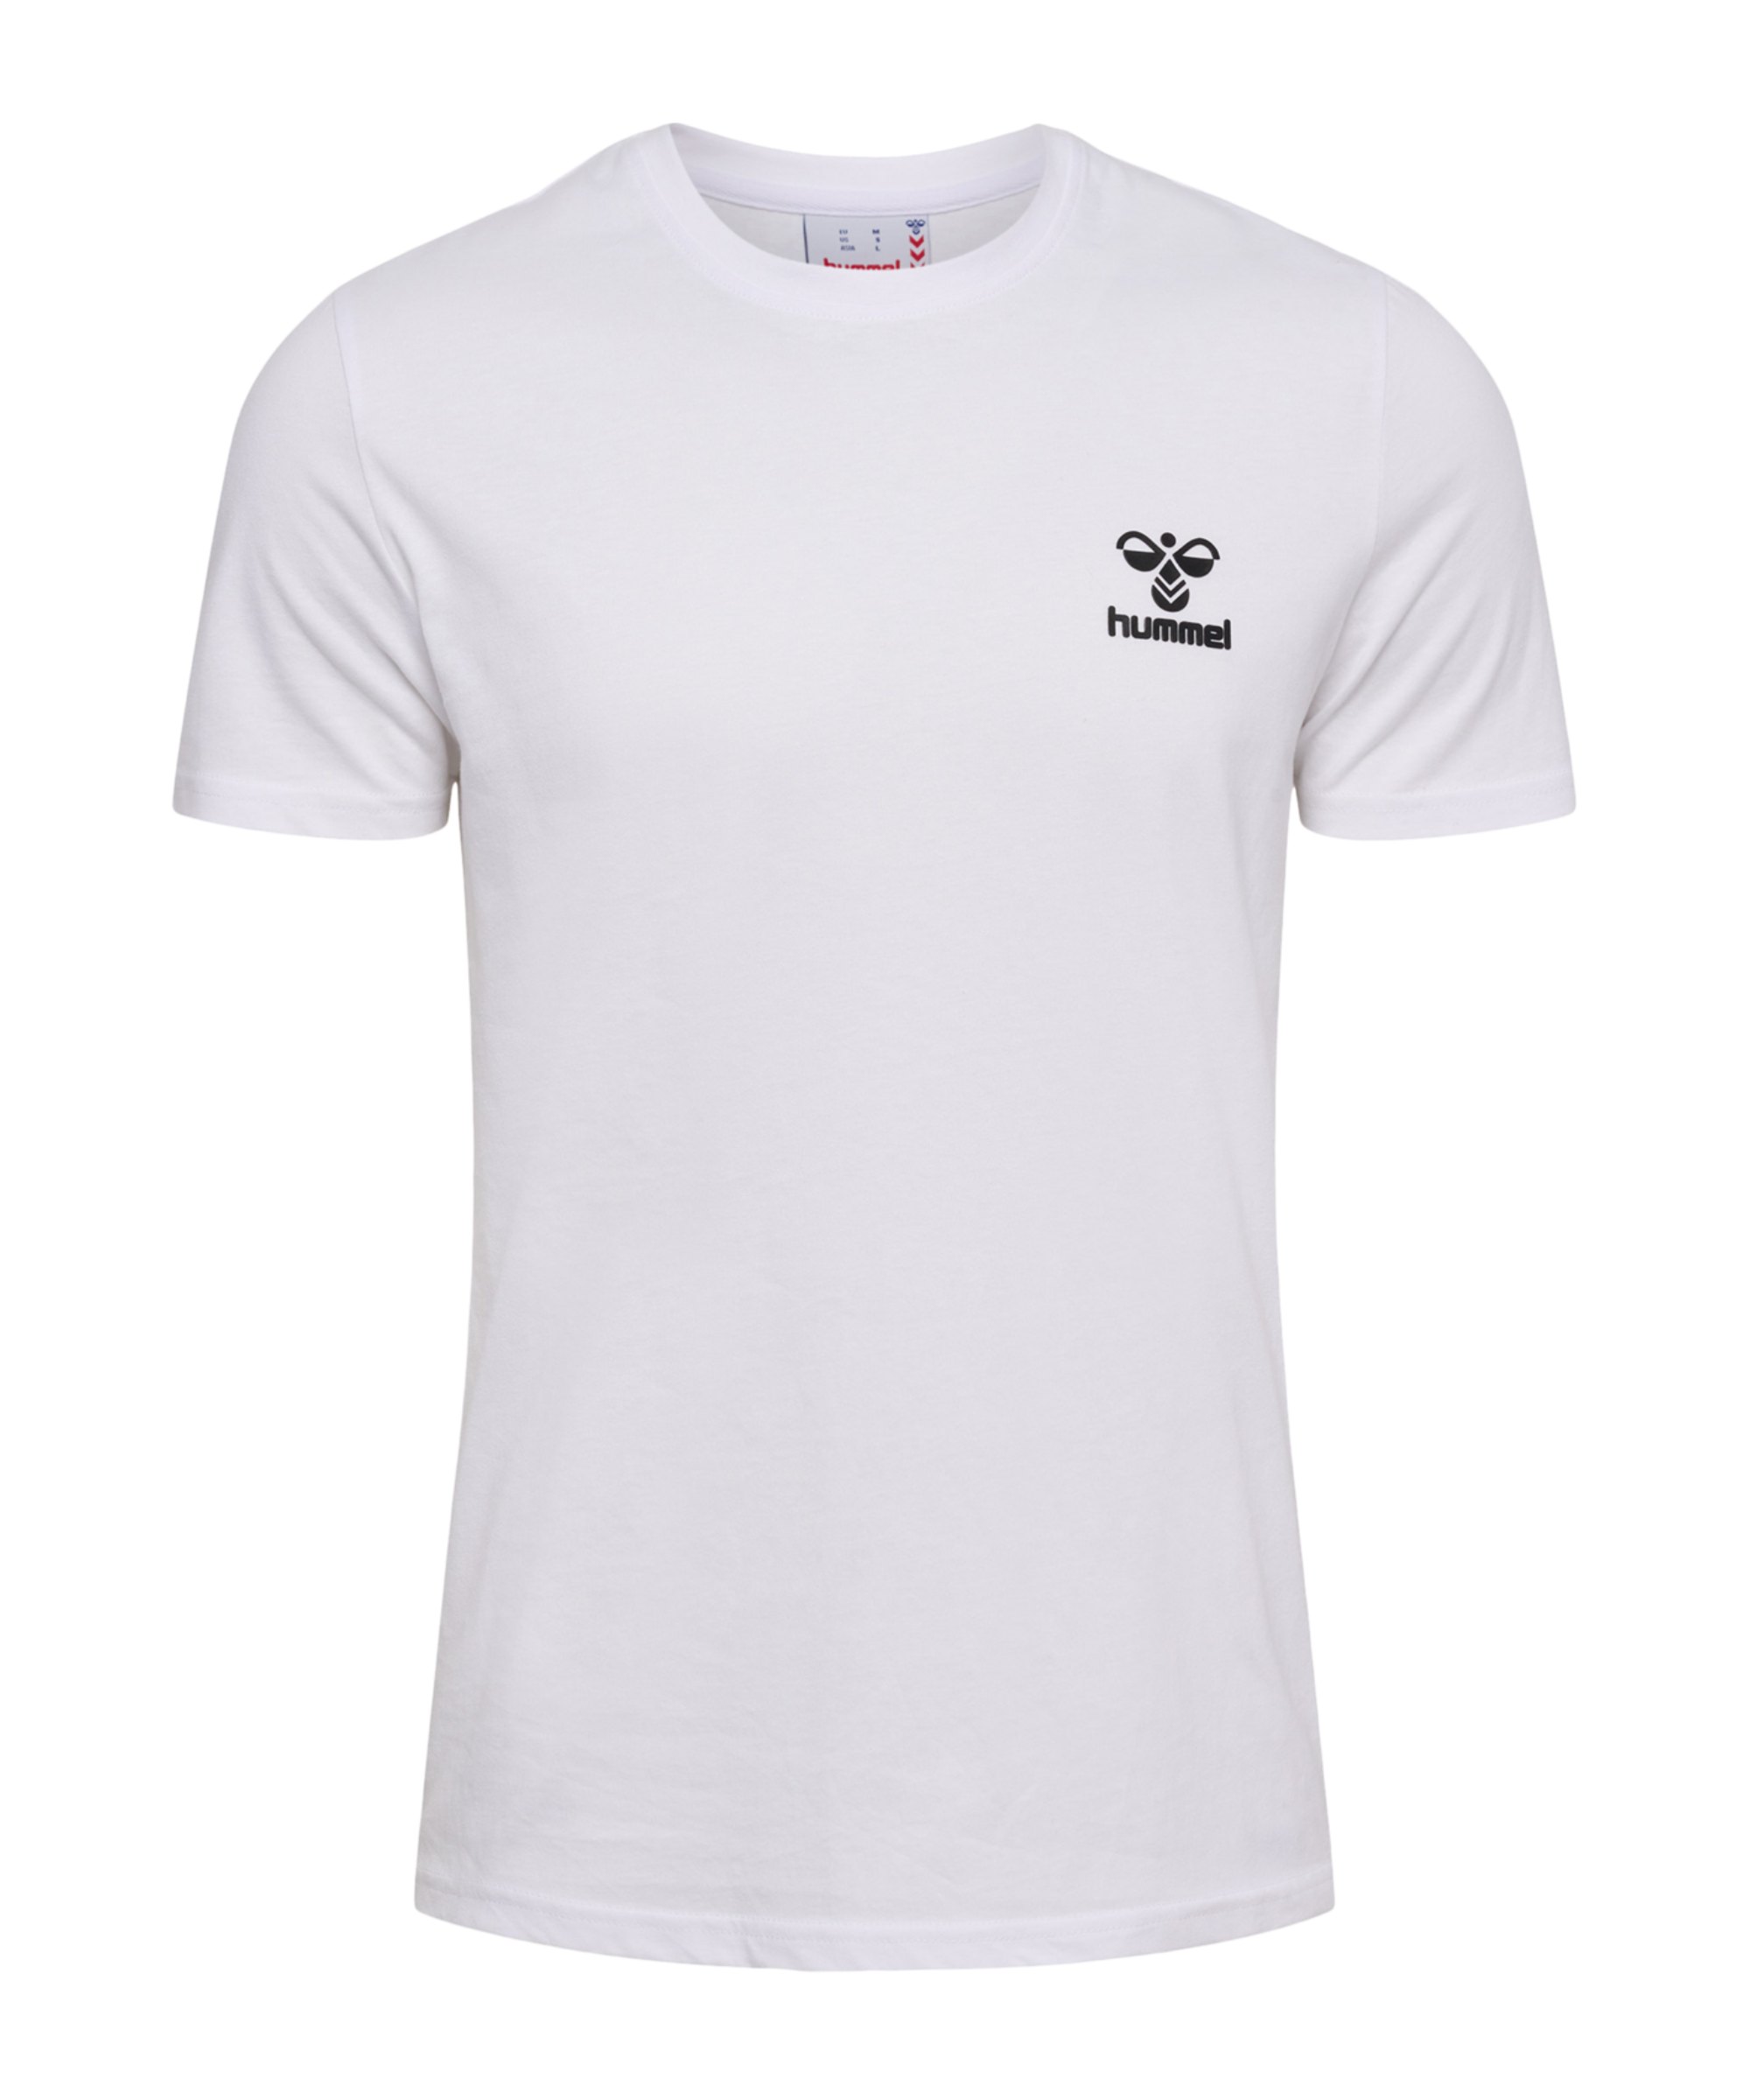 Hummel hmllCONS T-Shirt Weiss weiss